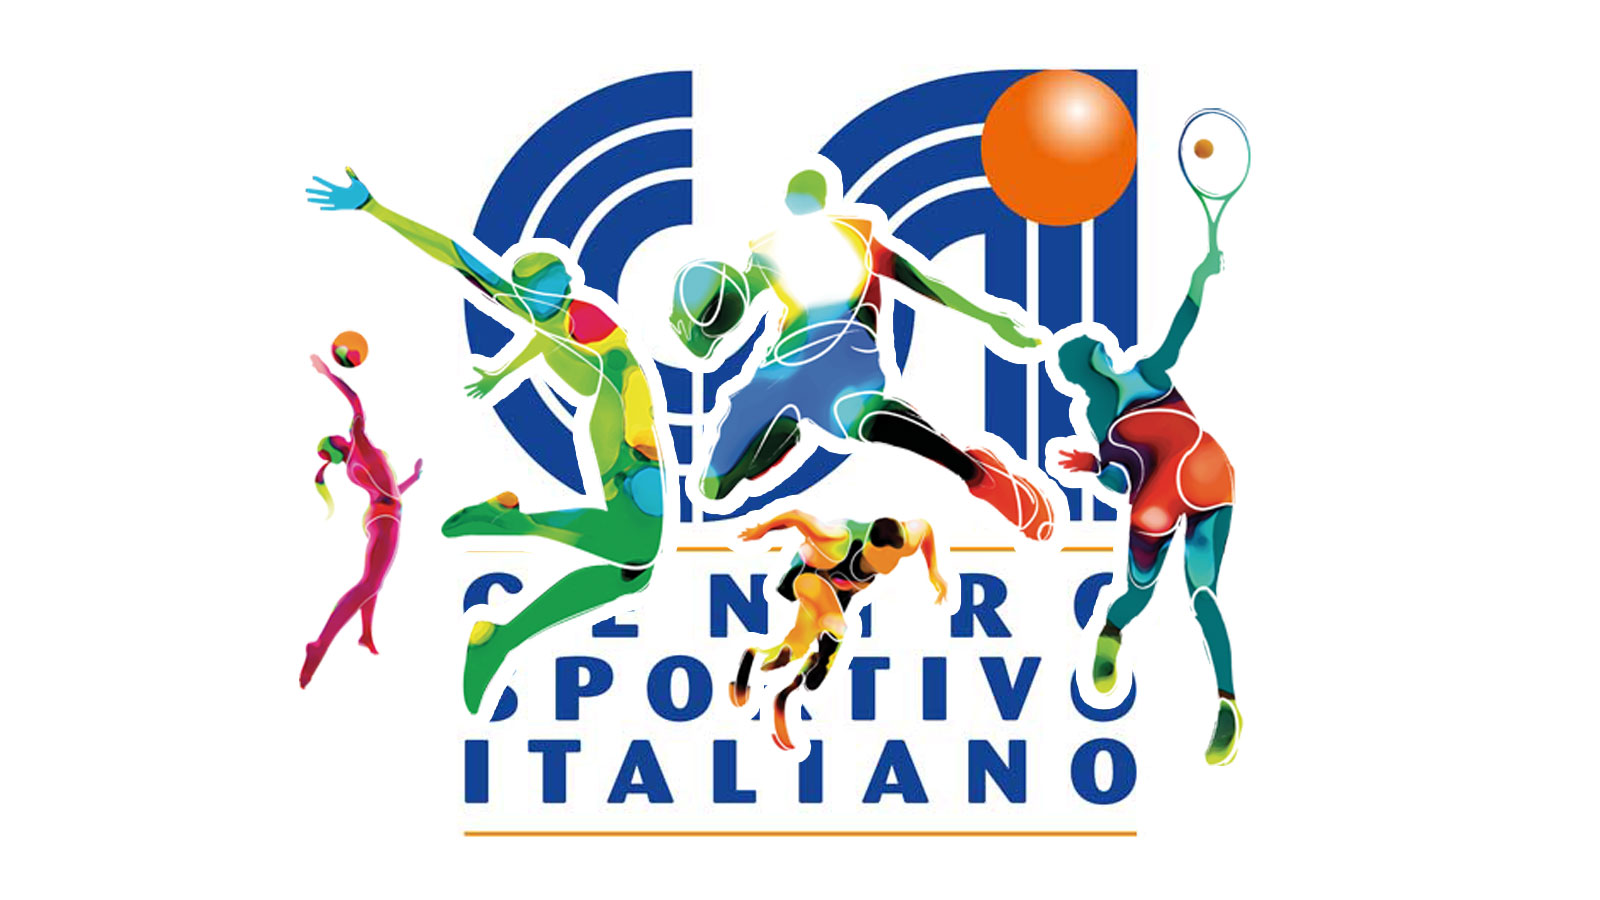 CSI Venezia - Comitato Sportivo Italiano di Venezia